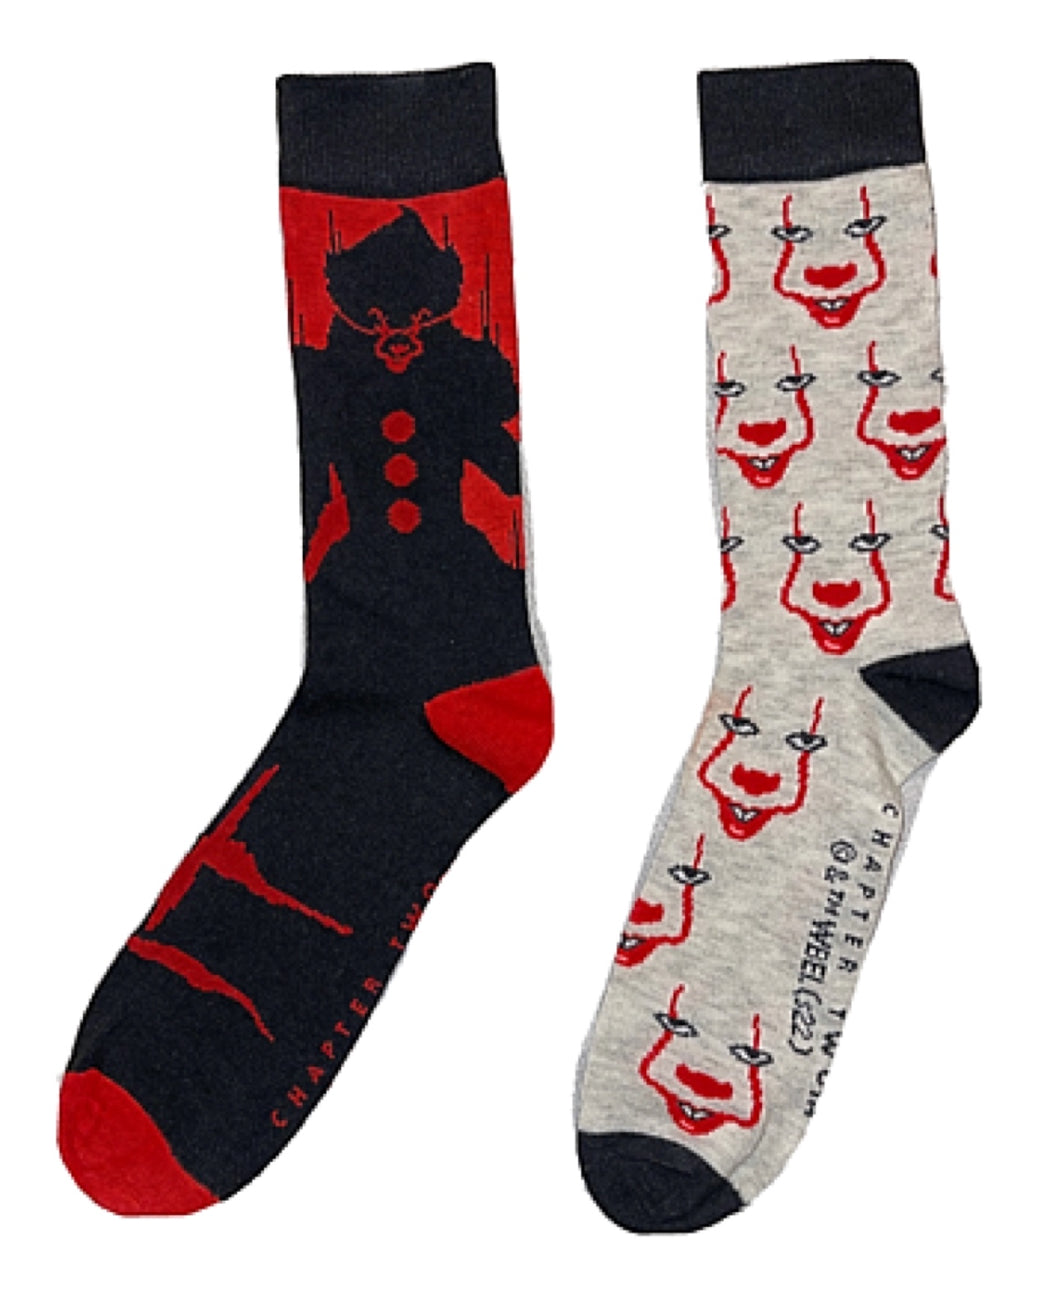 Horror | Novelty Socks for Less